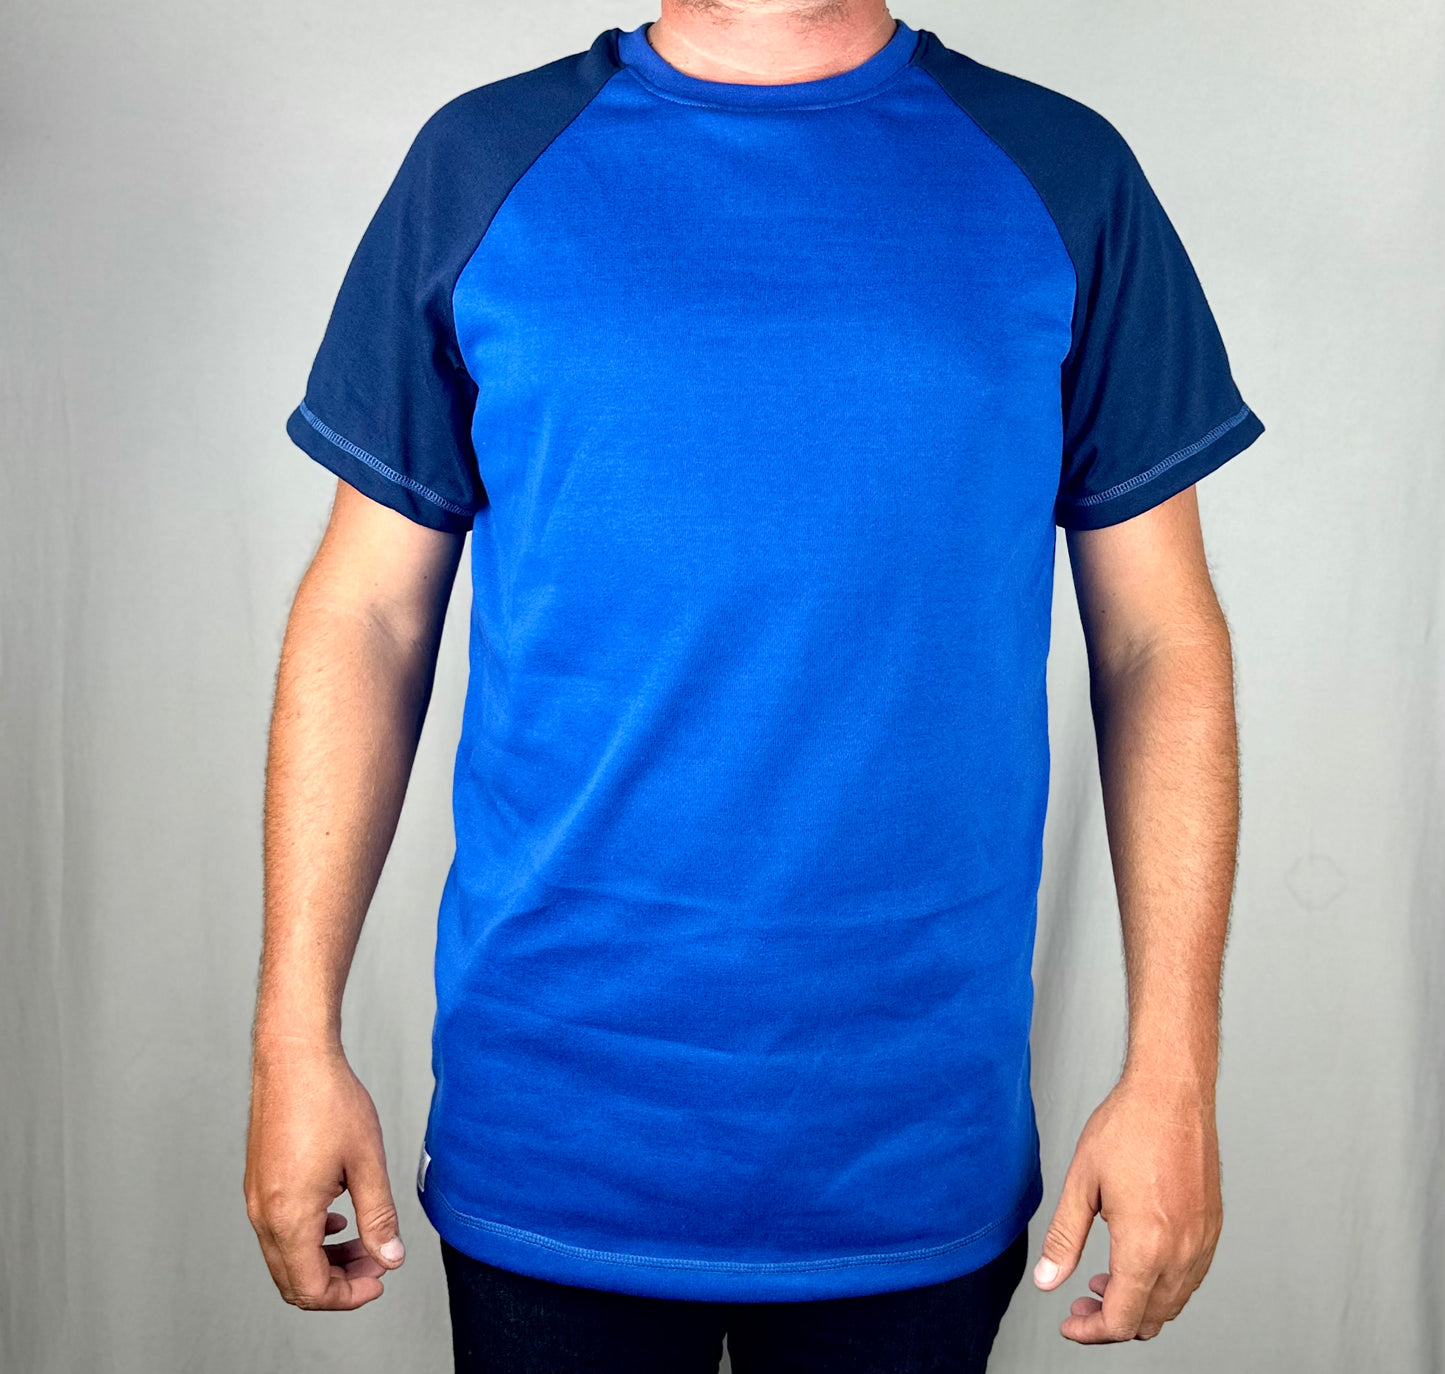 Premium Blue Men's T-shirt - 100% cotton